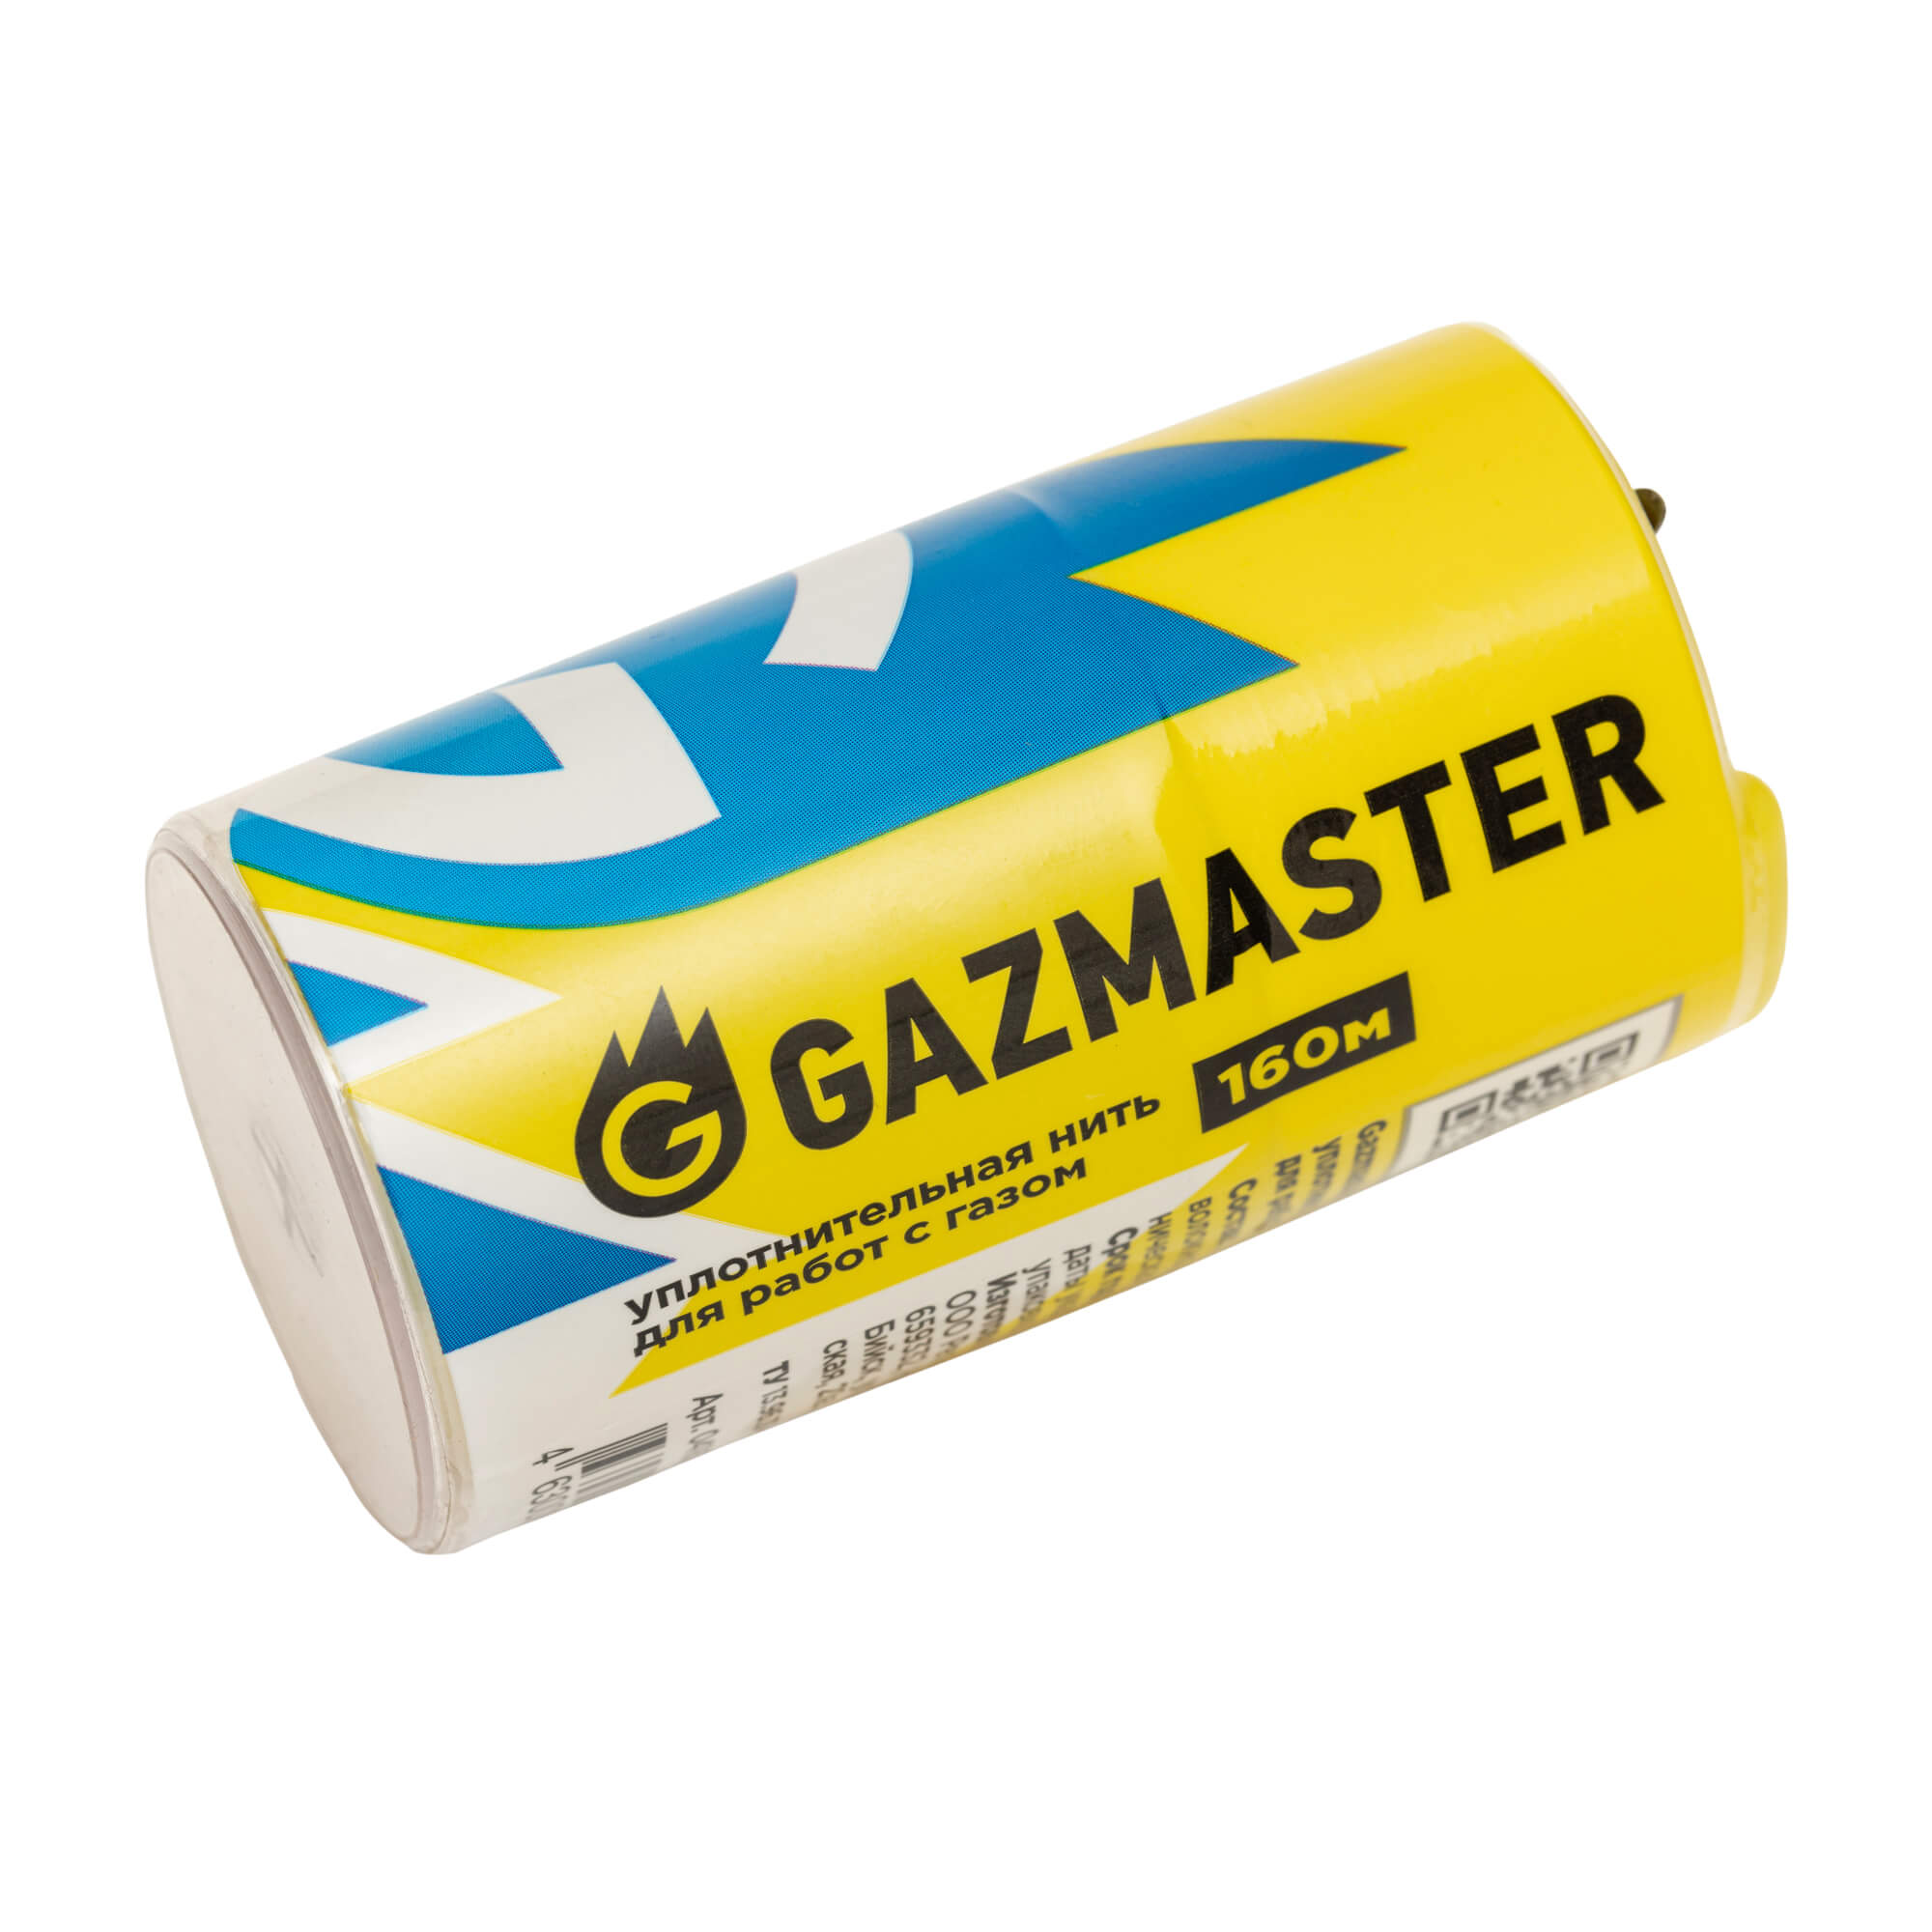 Газовая уплотнительная нить Gazmaster, бокс 160м. - фото